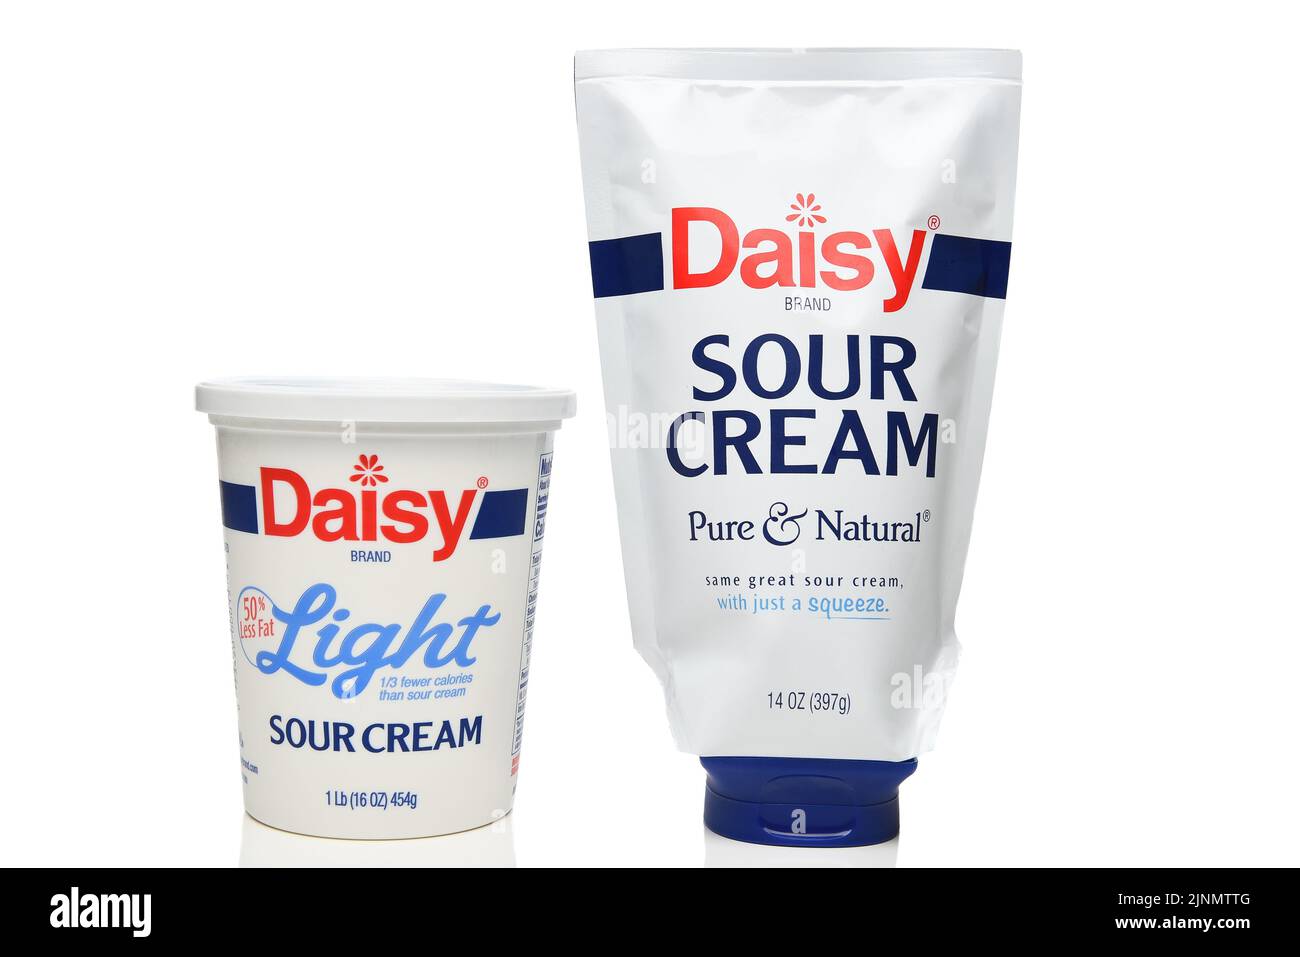 IRVINE, CALIFORNIA - 12 AGO 2022: Una scatola di crema acida leggera di Daisy e un pacchetto cigolabile di crema acida regolare di marca di Daisy. Foto Stock